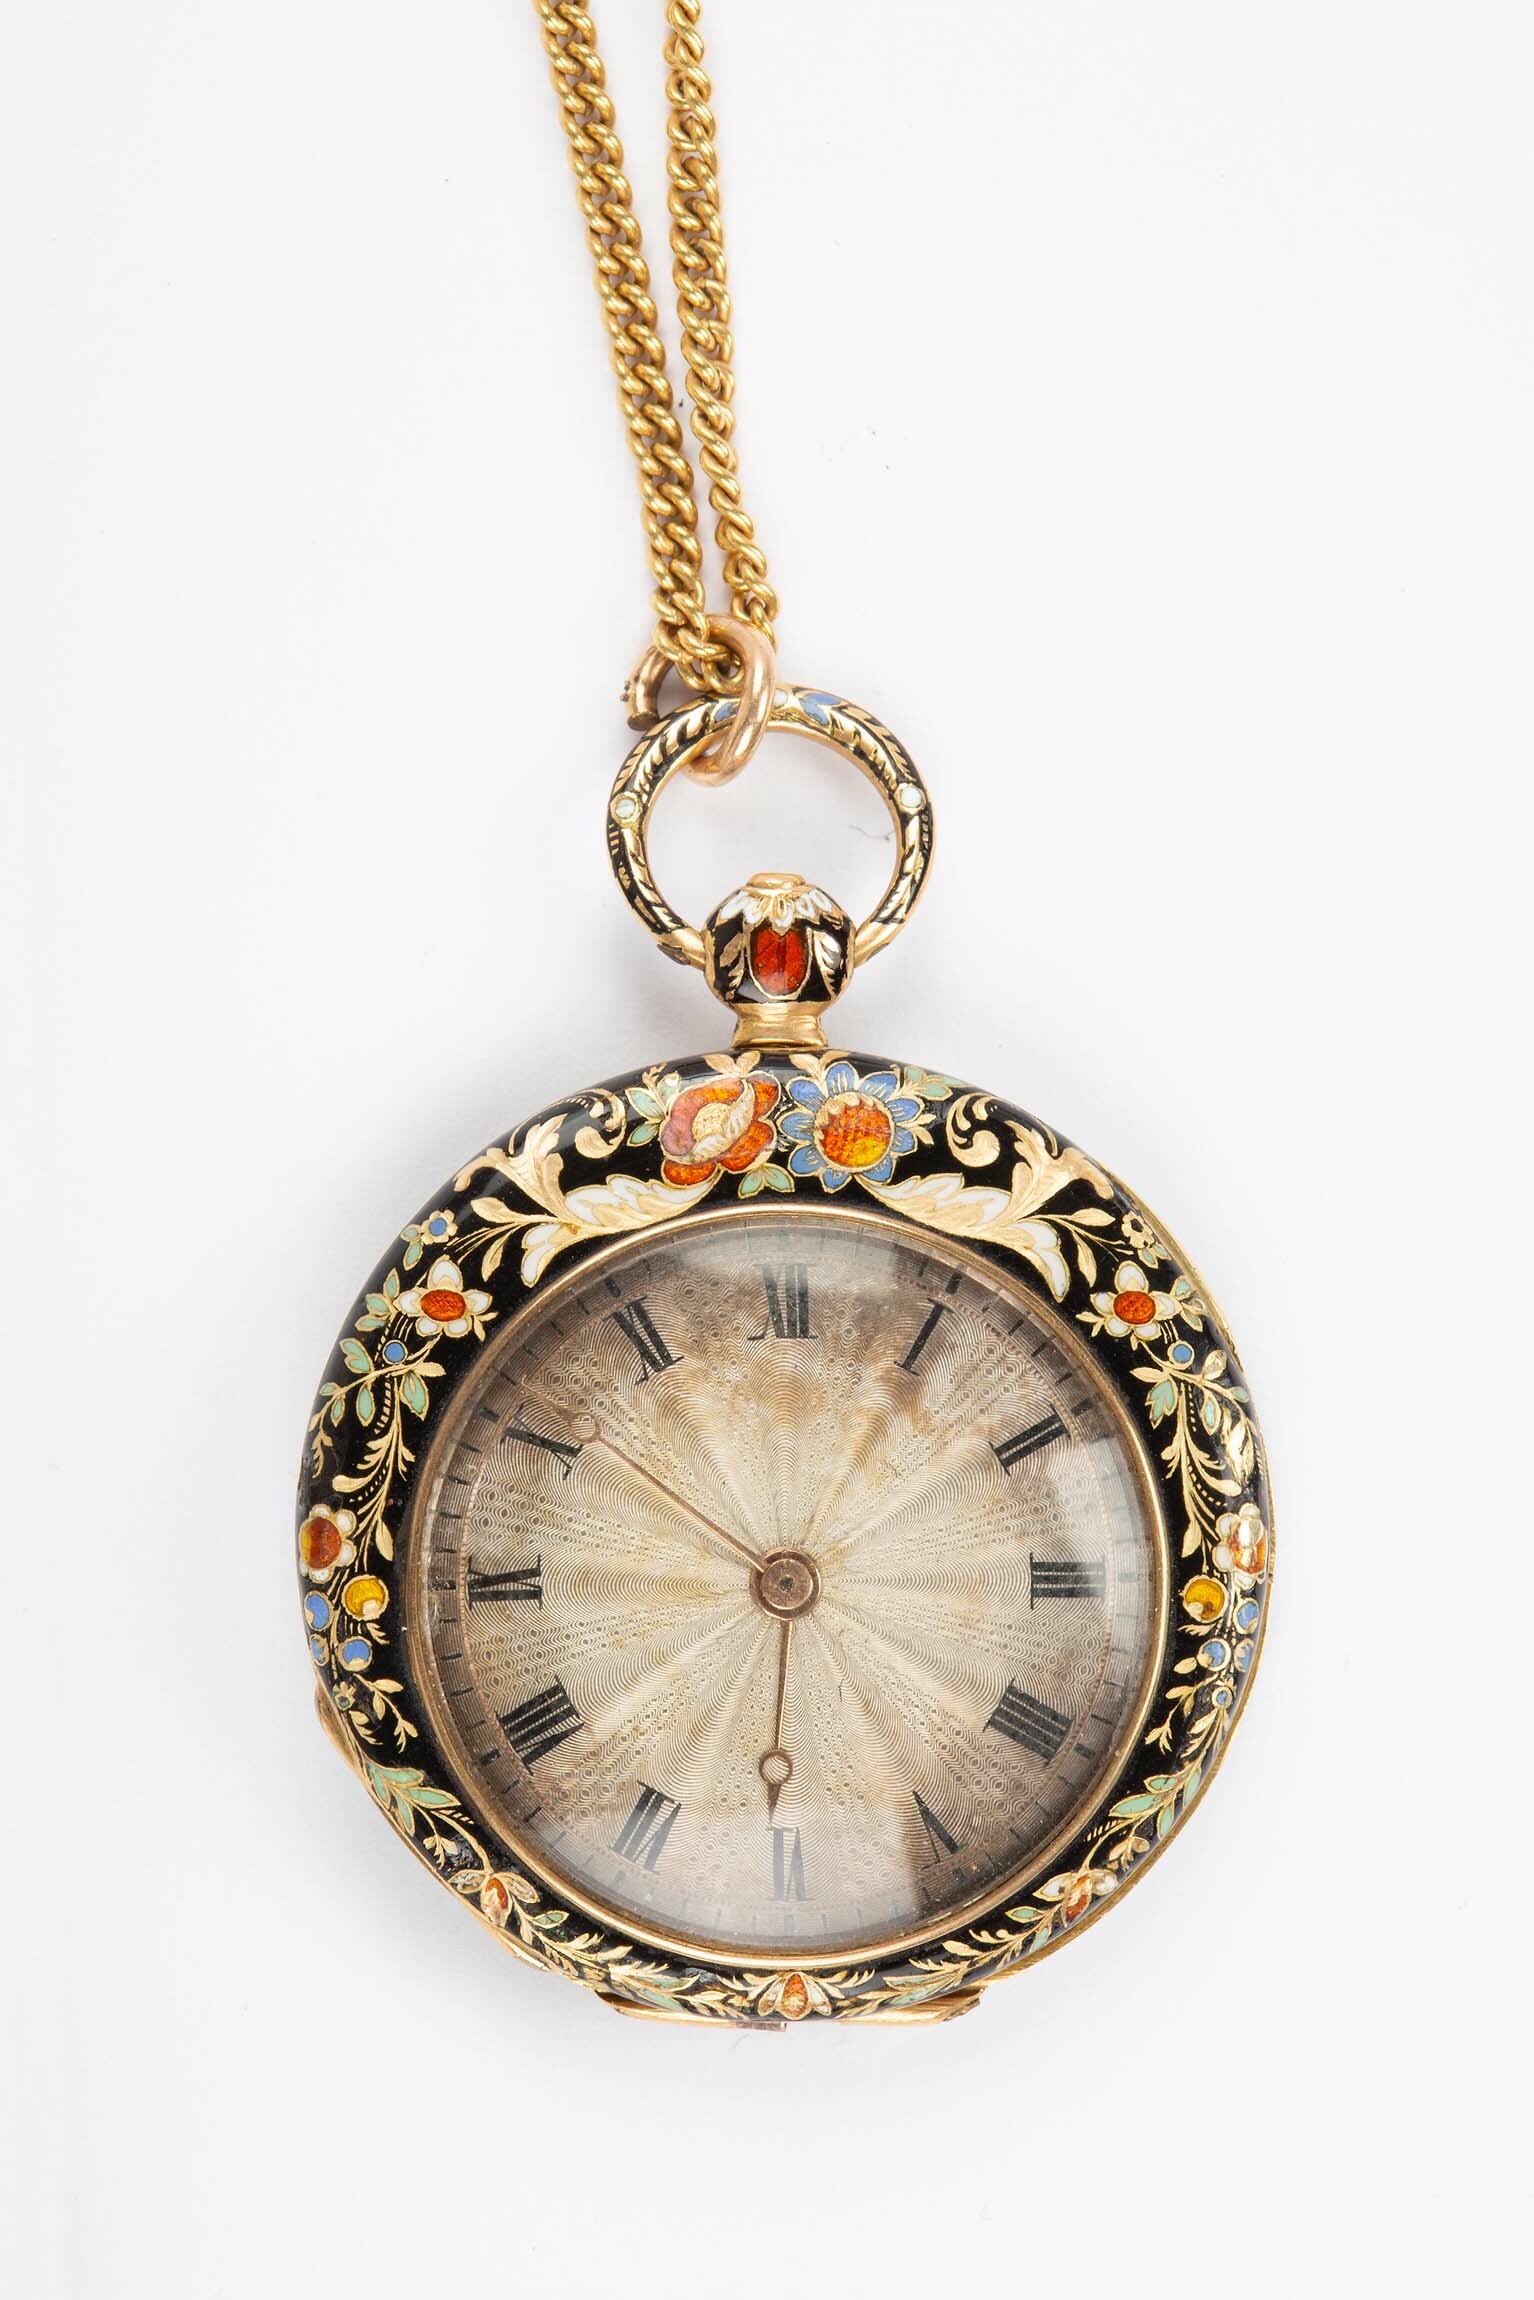 Taschenuhr mit Halskette, H. Menet, Genf (CH), um 1850 (Deutsches Uhrenmuseum CC BY-SA)